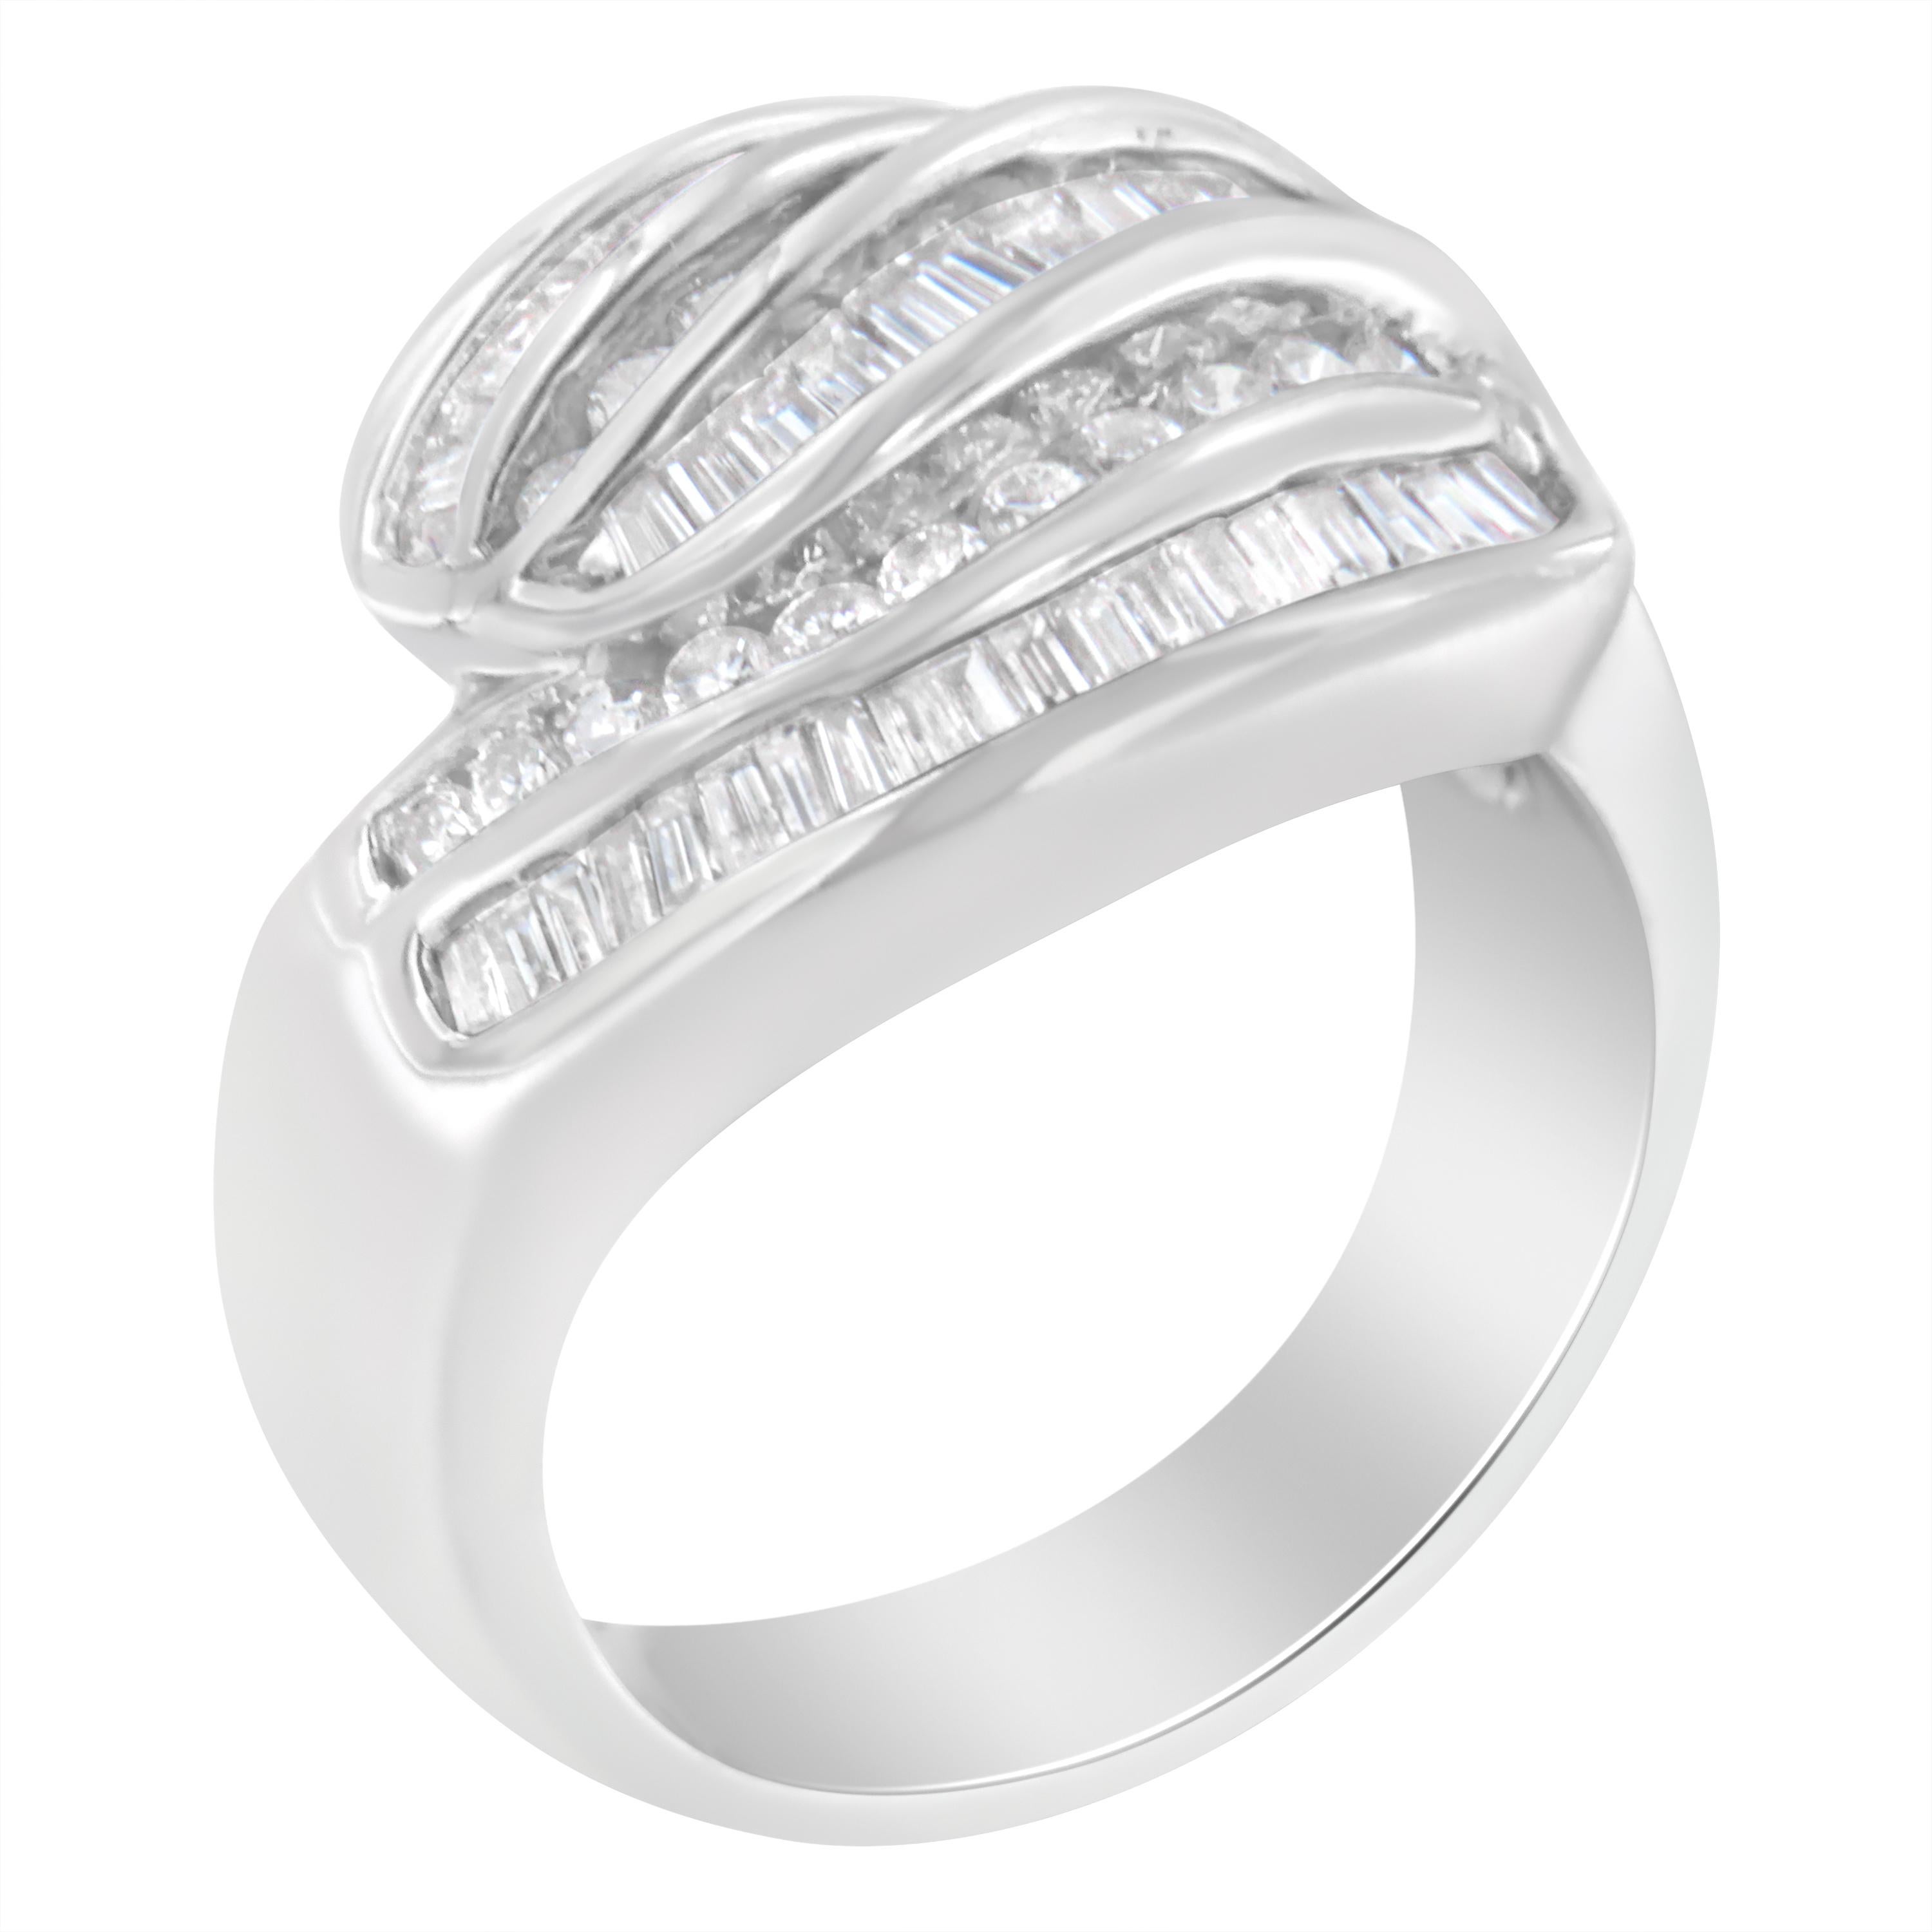 Ein elegantes Diamantband, das mit fünf Reihen abwechselnd runder Brillanten und Baguette-Diamanten funkelt. Das breite Band ist aus kühlem 14-karätigem Weißgold gefertigt. Er hat ein Gesamtgewicht von 1 Karat. Es handelt sich um ein seltenes